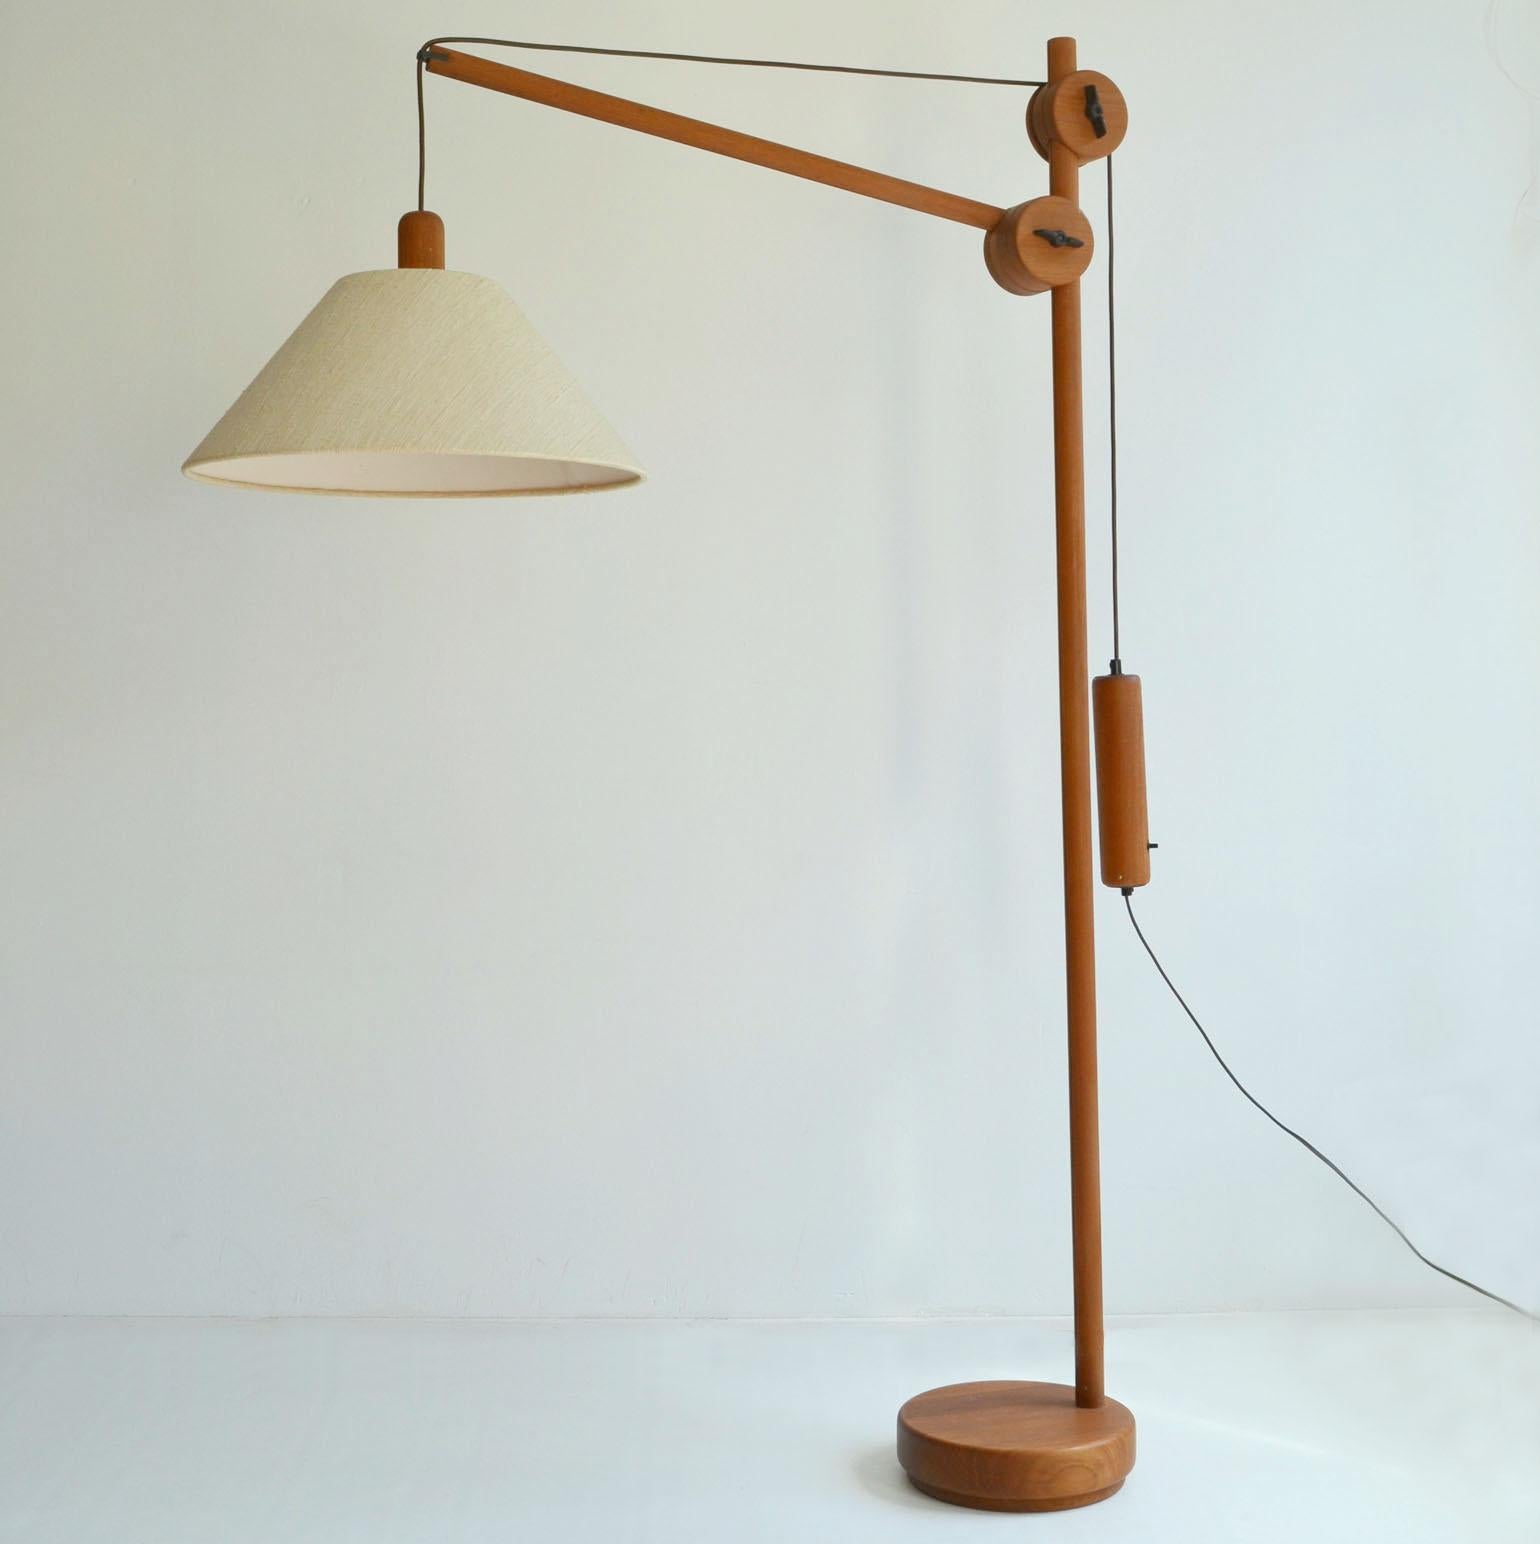 Lampadaire sculptural danois de style moderne du milieu du siècle, début des années 1970. Le cadre en teck est équipé d'un bras réglable (d'une longueur de 100 cm) et d'un contrepoids pour le positionnement de la source lumineuse. La lampe et le